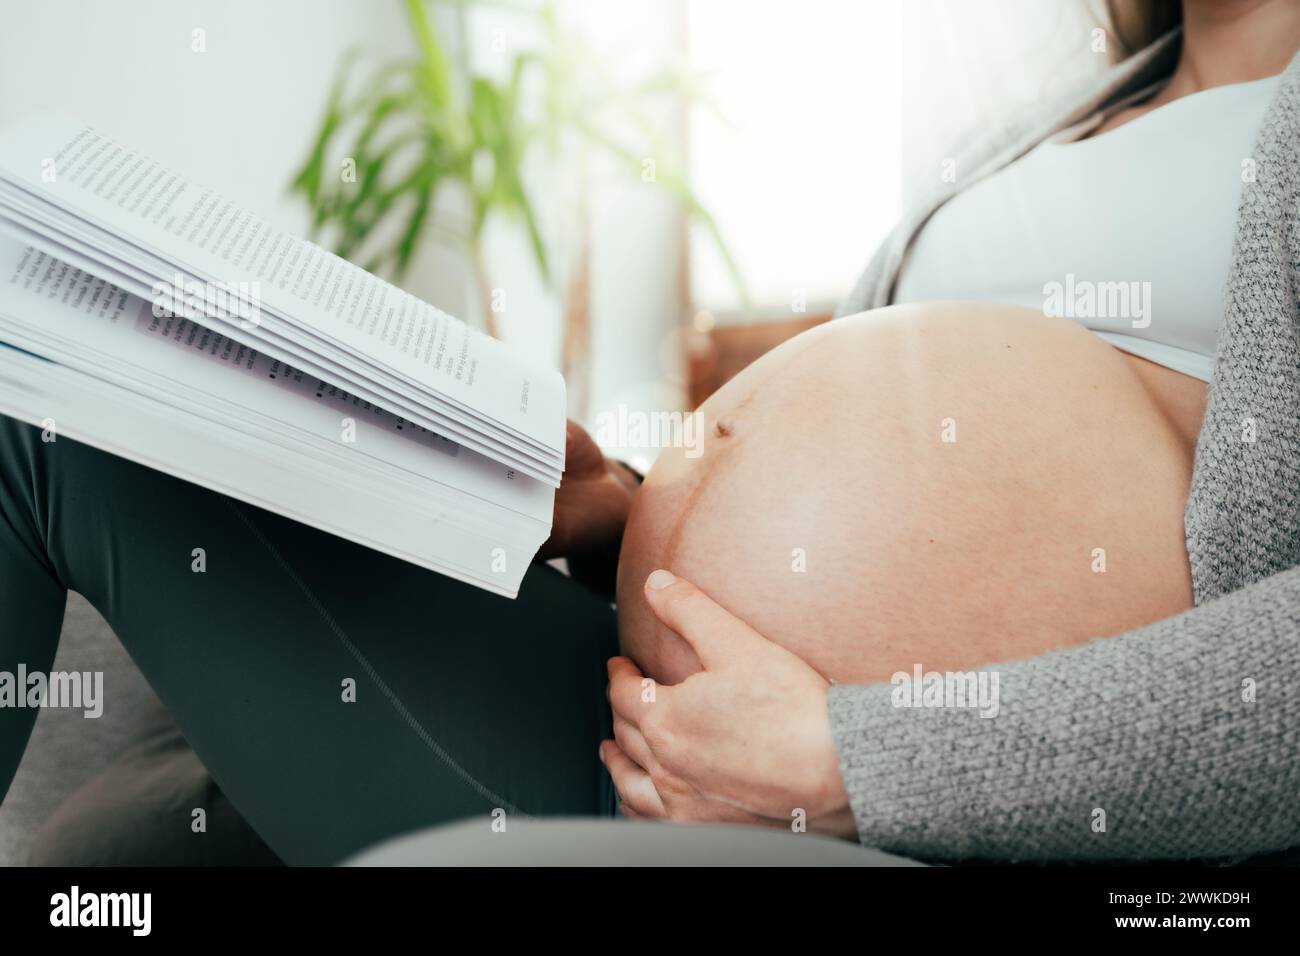 Description : angle bas de la femme dans les derniers mois de grossesse tenant doucement son ventre tout en lisant un livre. Grossesse troisième trimestre - semaine 34 Banque D'Images